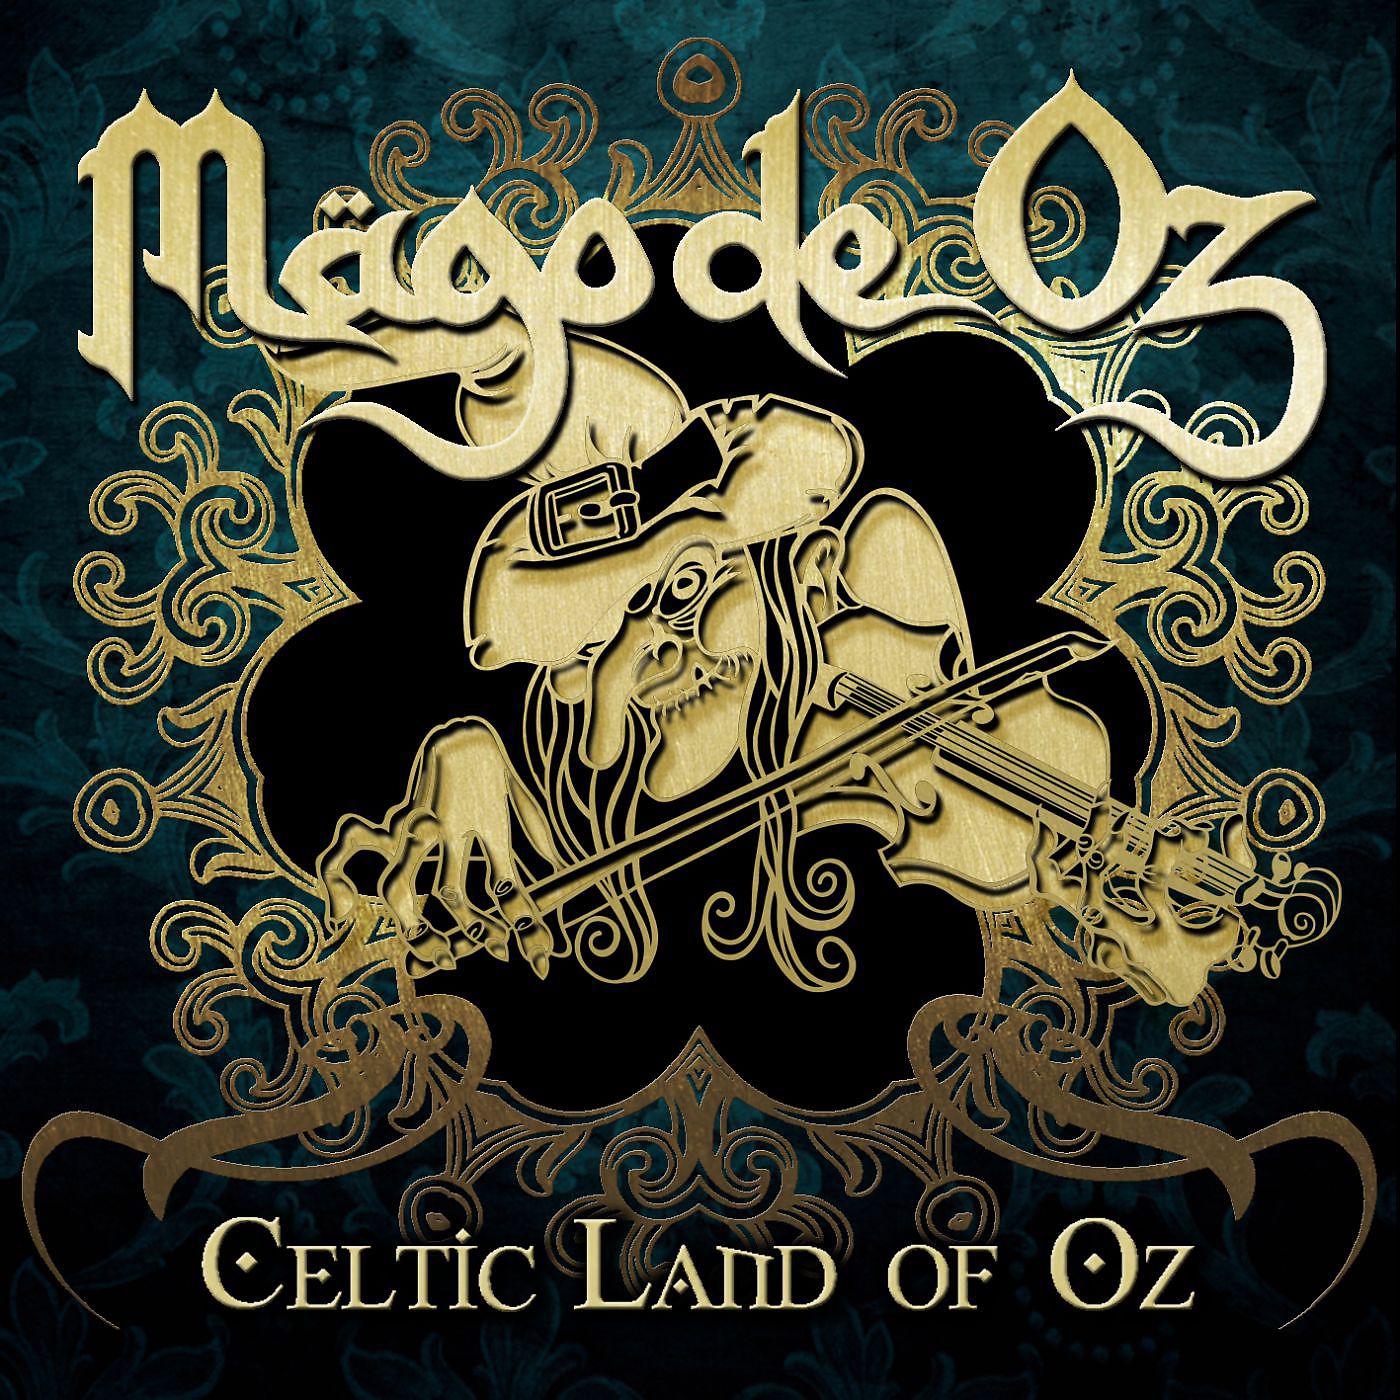 Mago de oz. Mago de oz обложки альбомов. Группа Mägo de oz. Mago de oz Celtic Land. Фолк рок обложки.